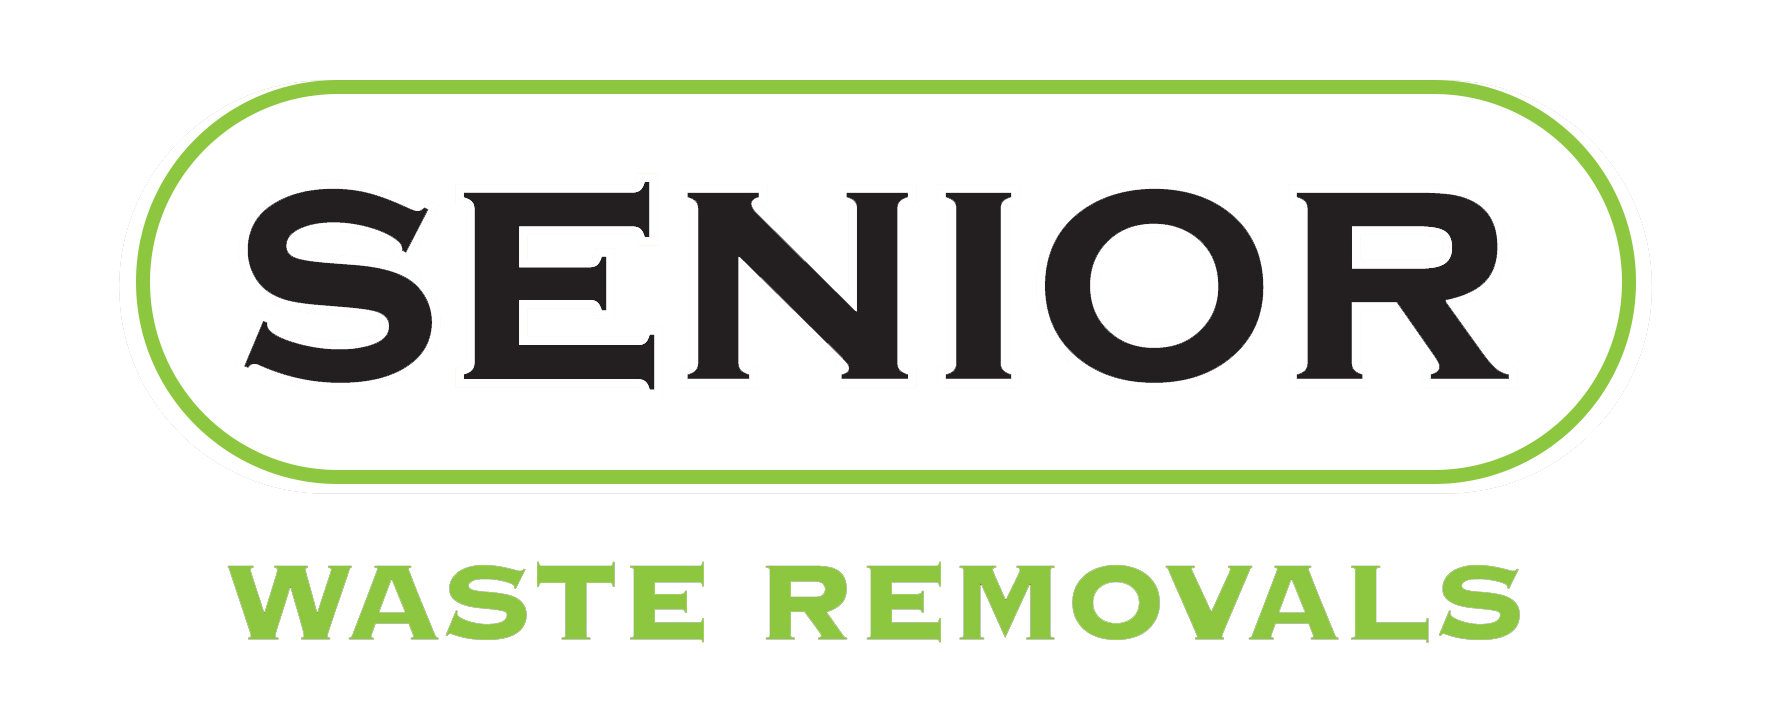 Senior-Waste-Removals-outline-1